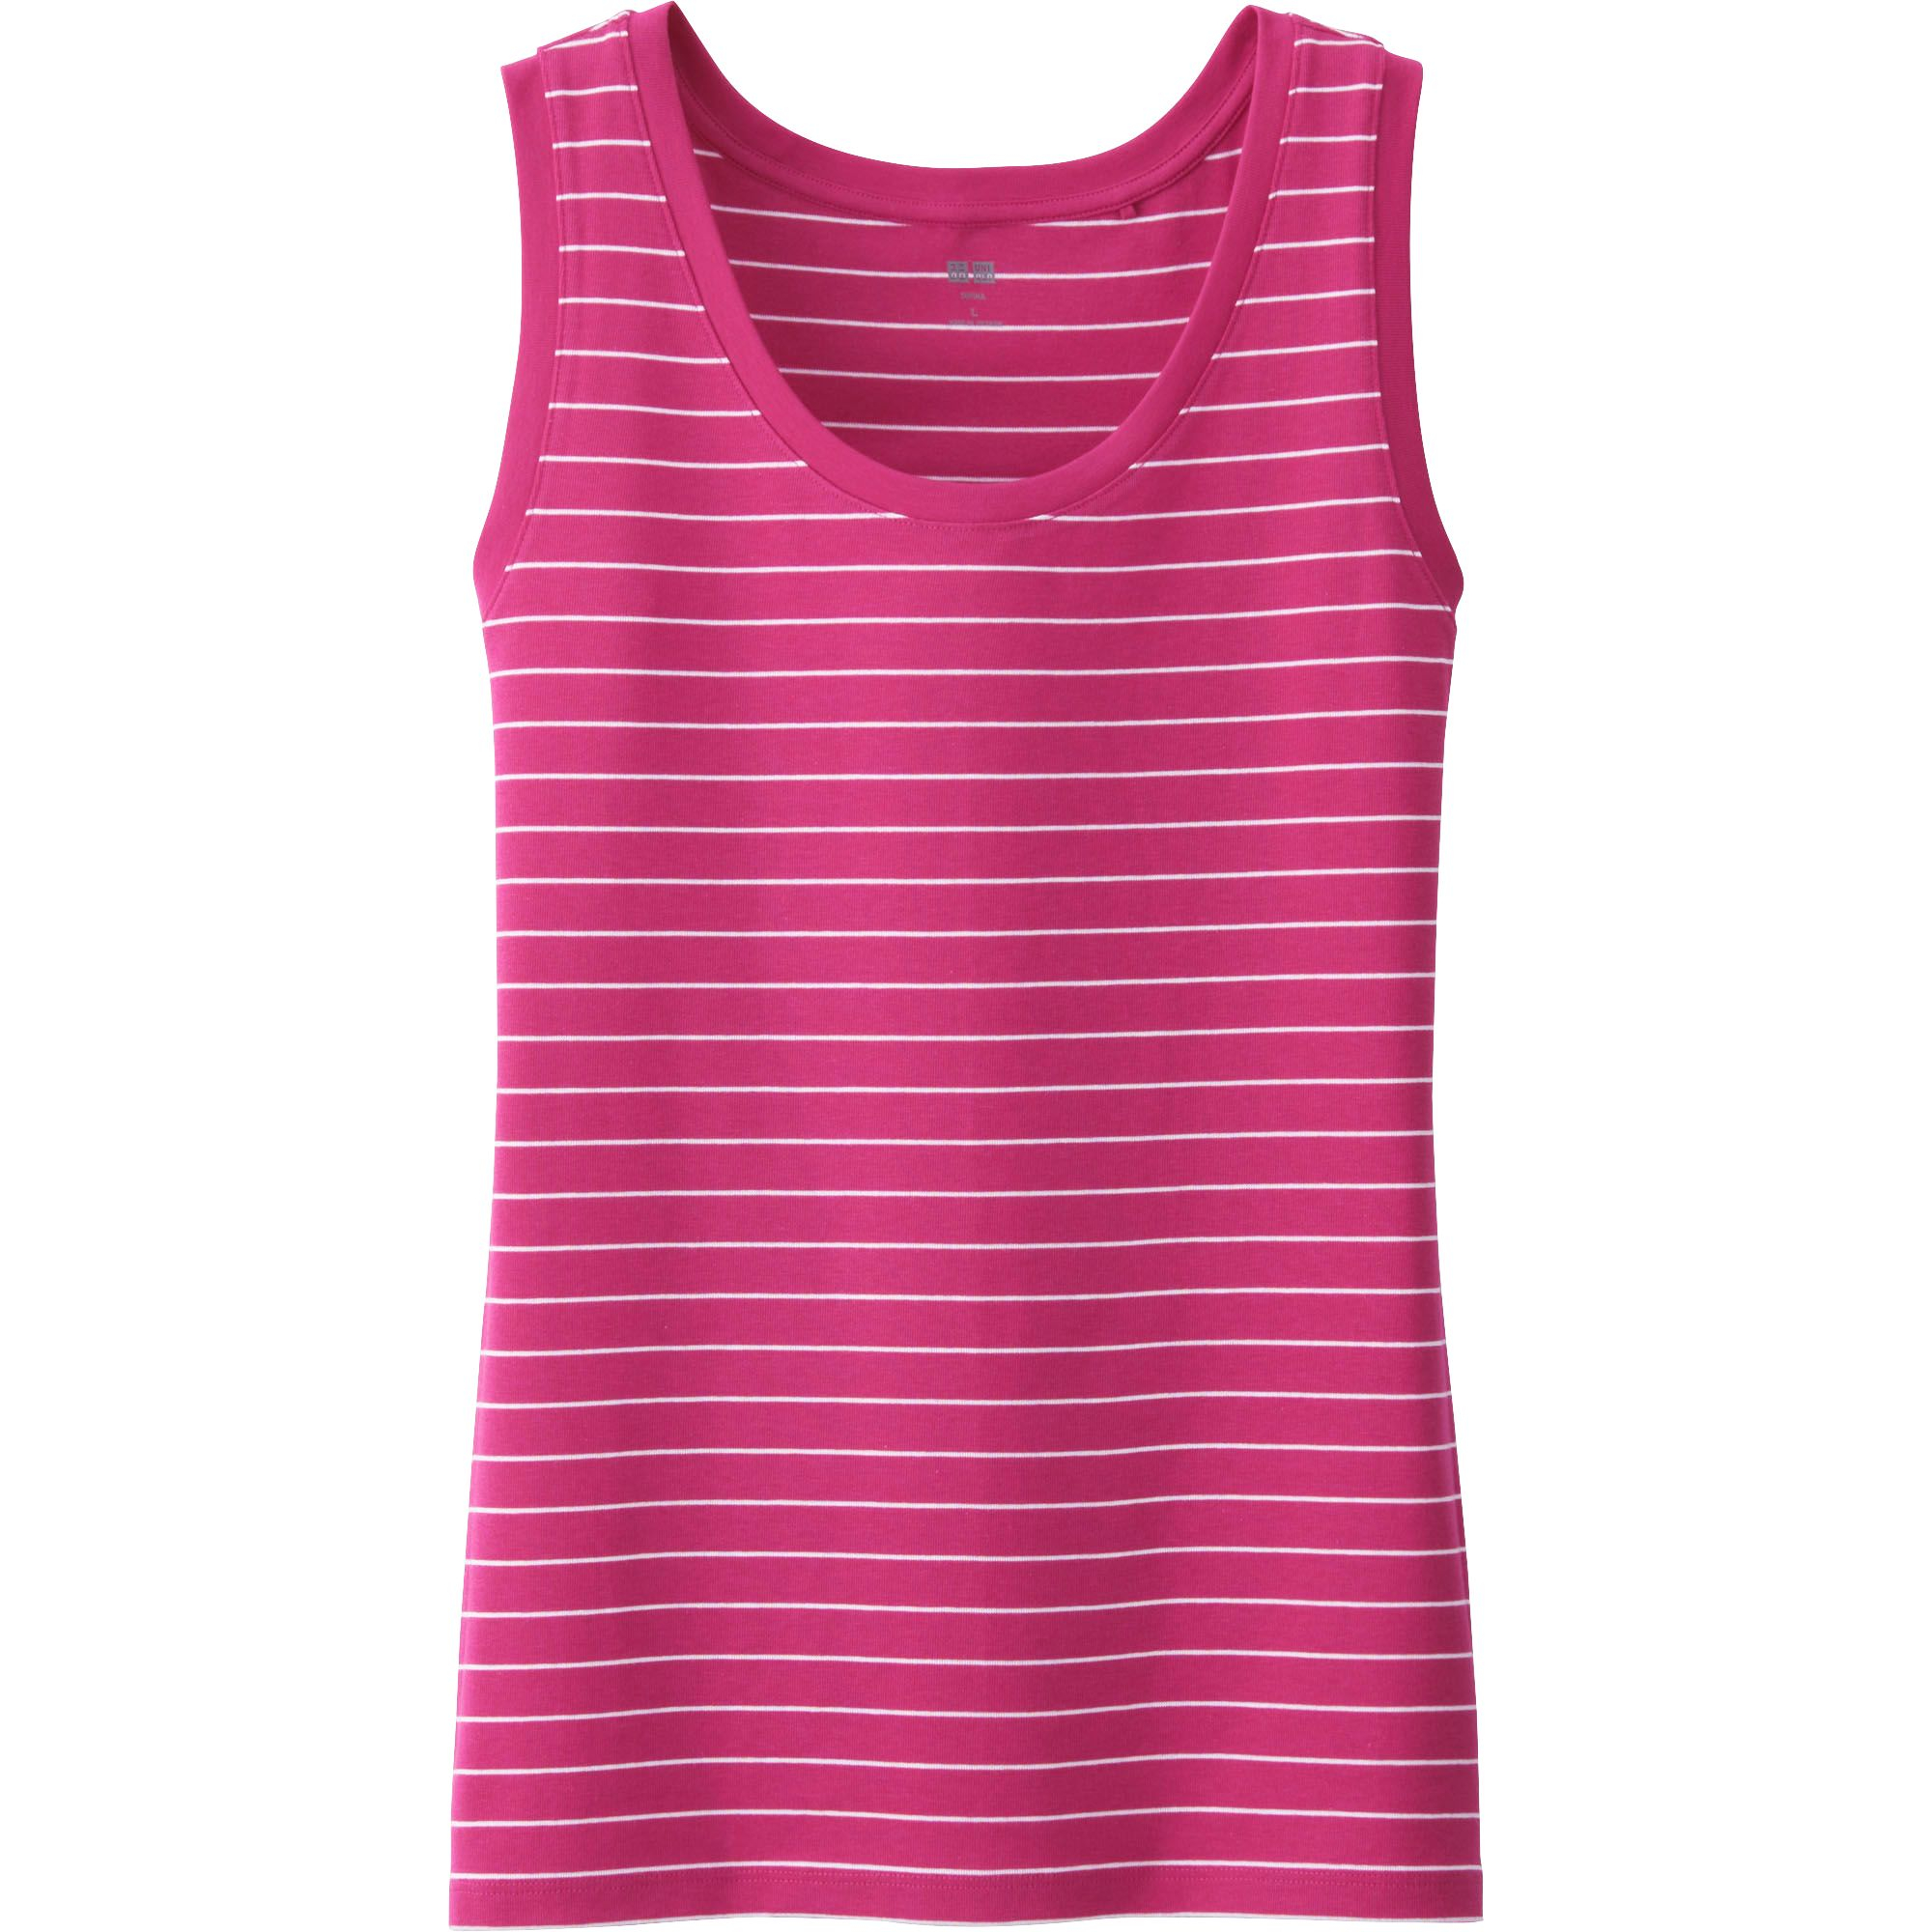 Uniqlo Supima Cotton Modal Striped Tank Top in Pink | Lyst